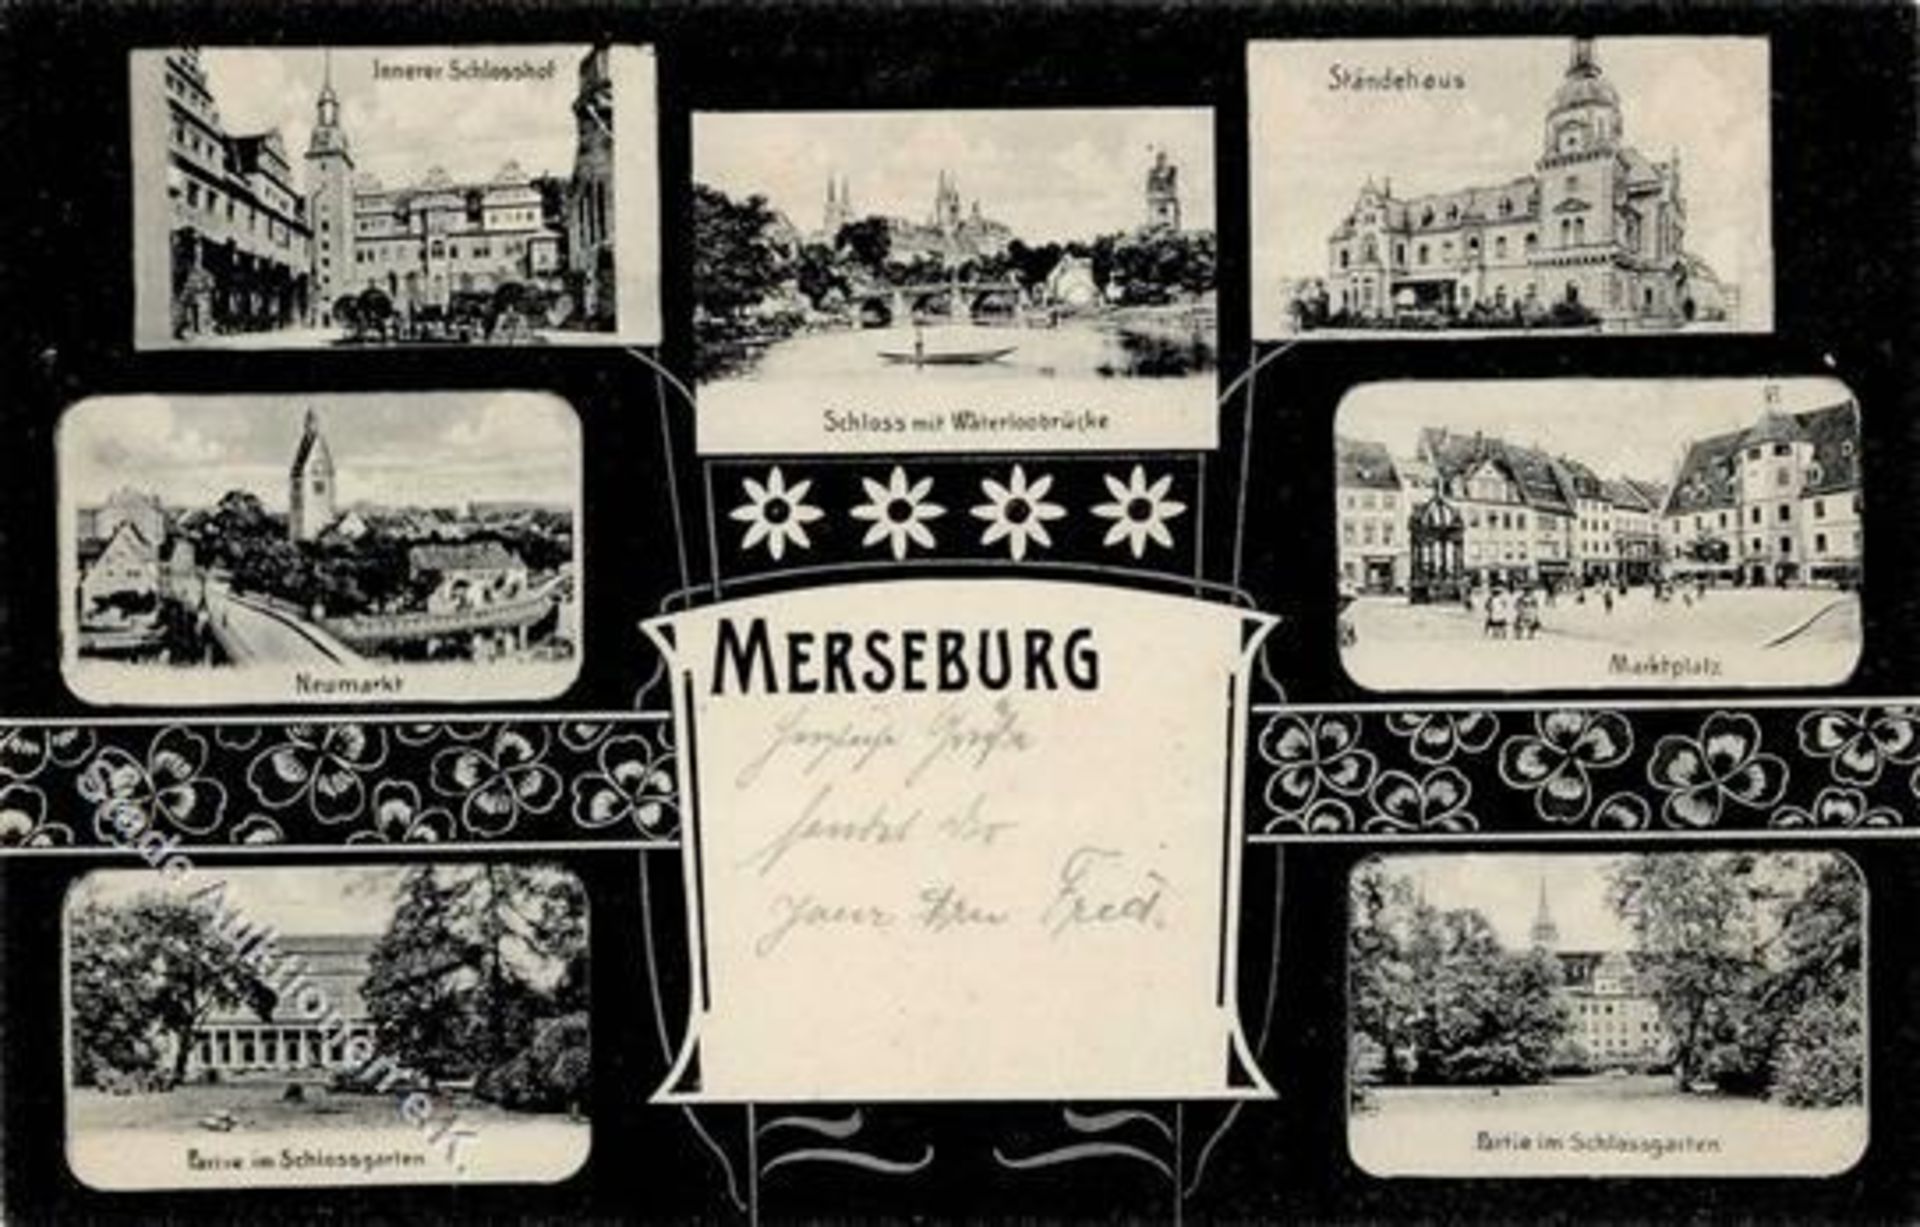 Merseburg (O4200) Schloss Waterloobrücke Marktplatz Neumarkt 1908 I-IIDieses Los wird in einer